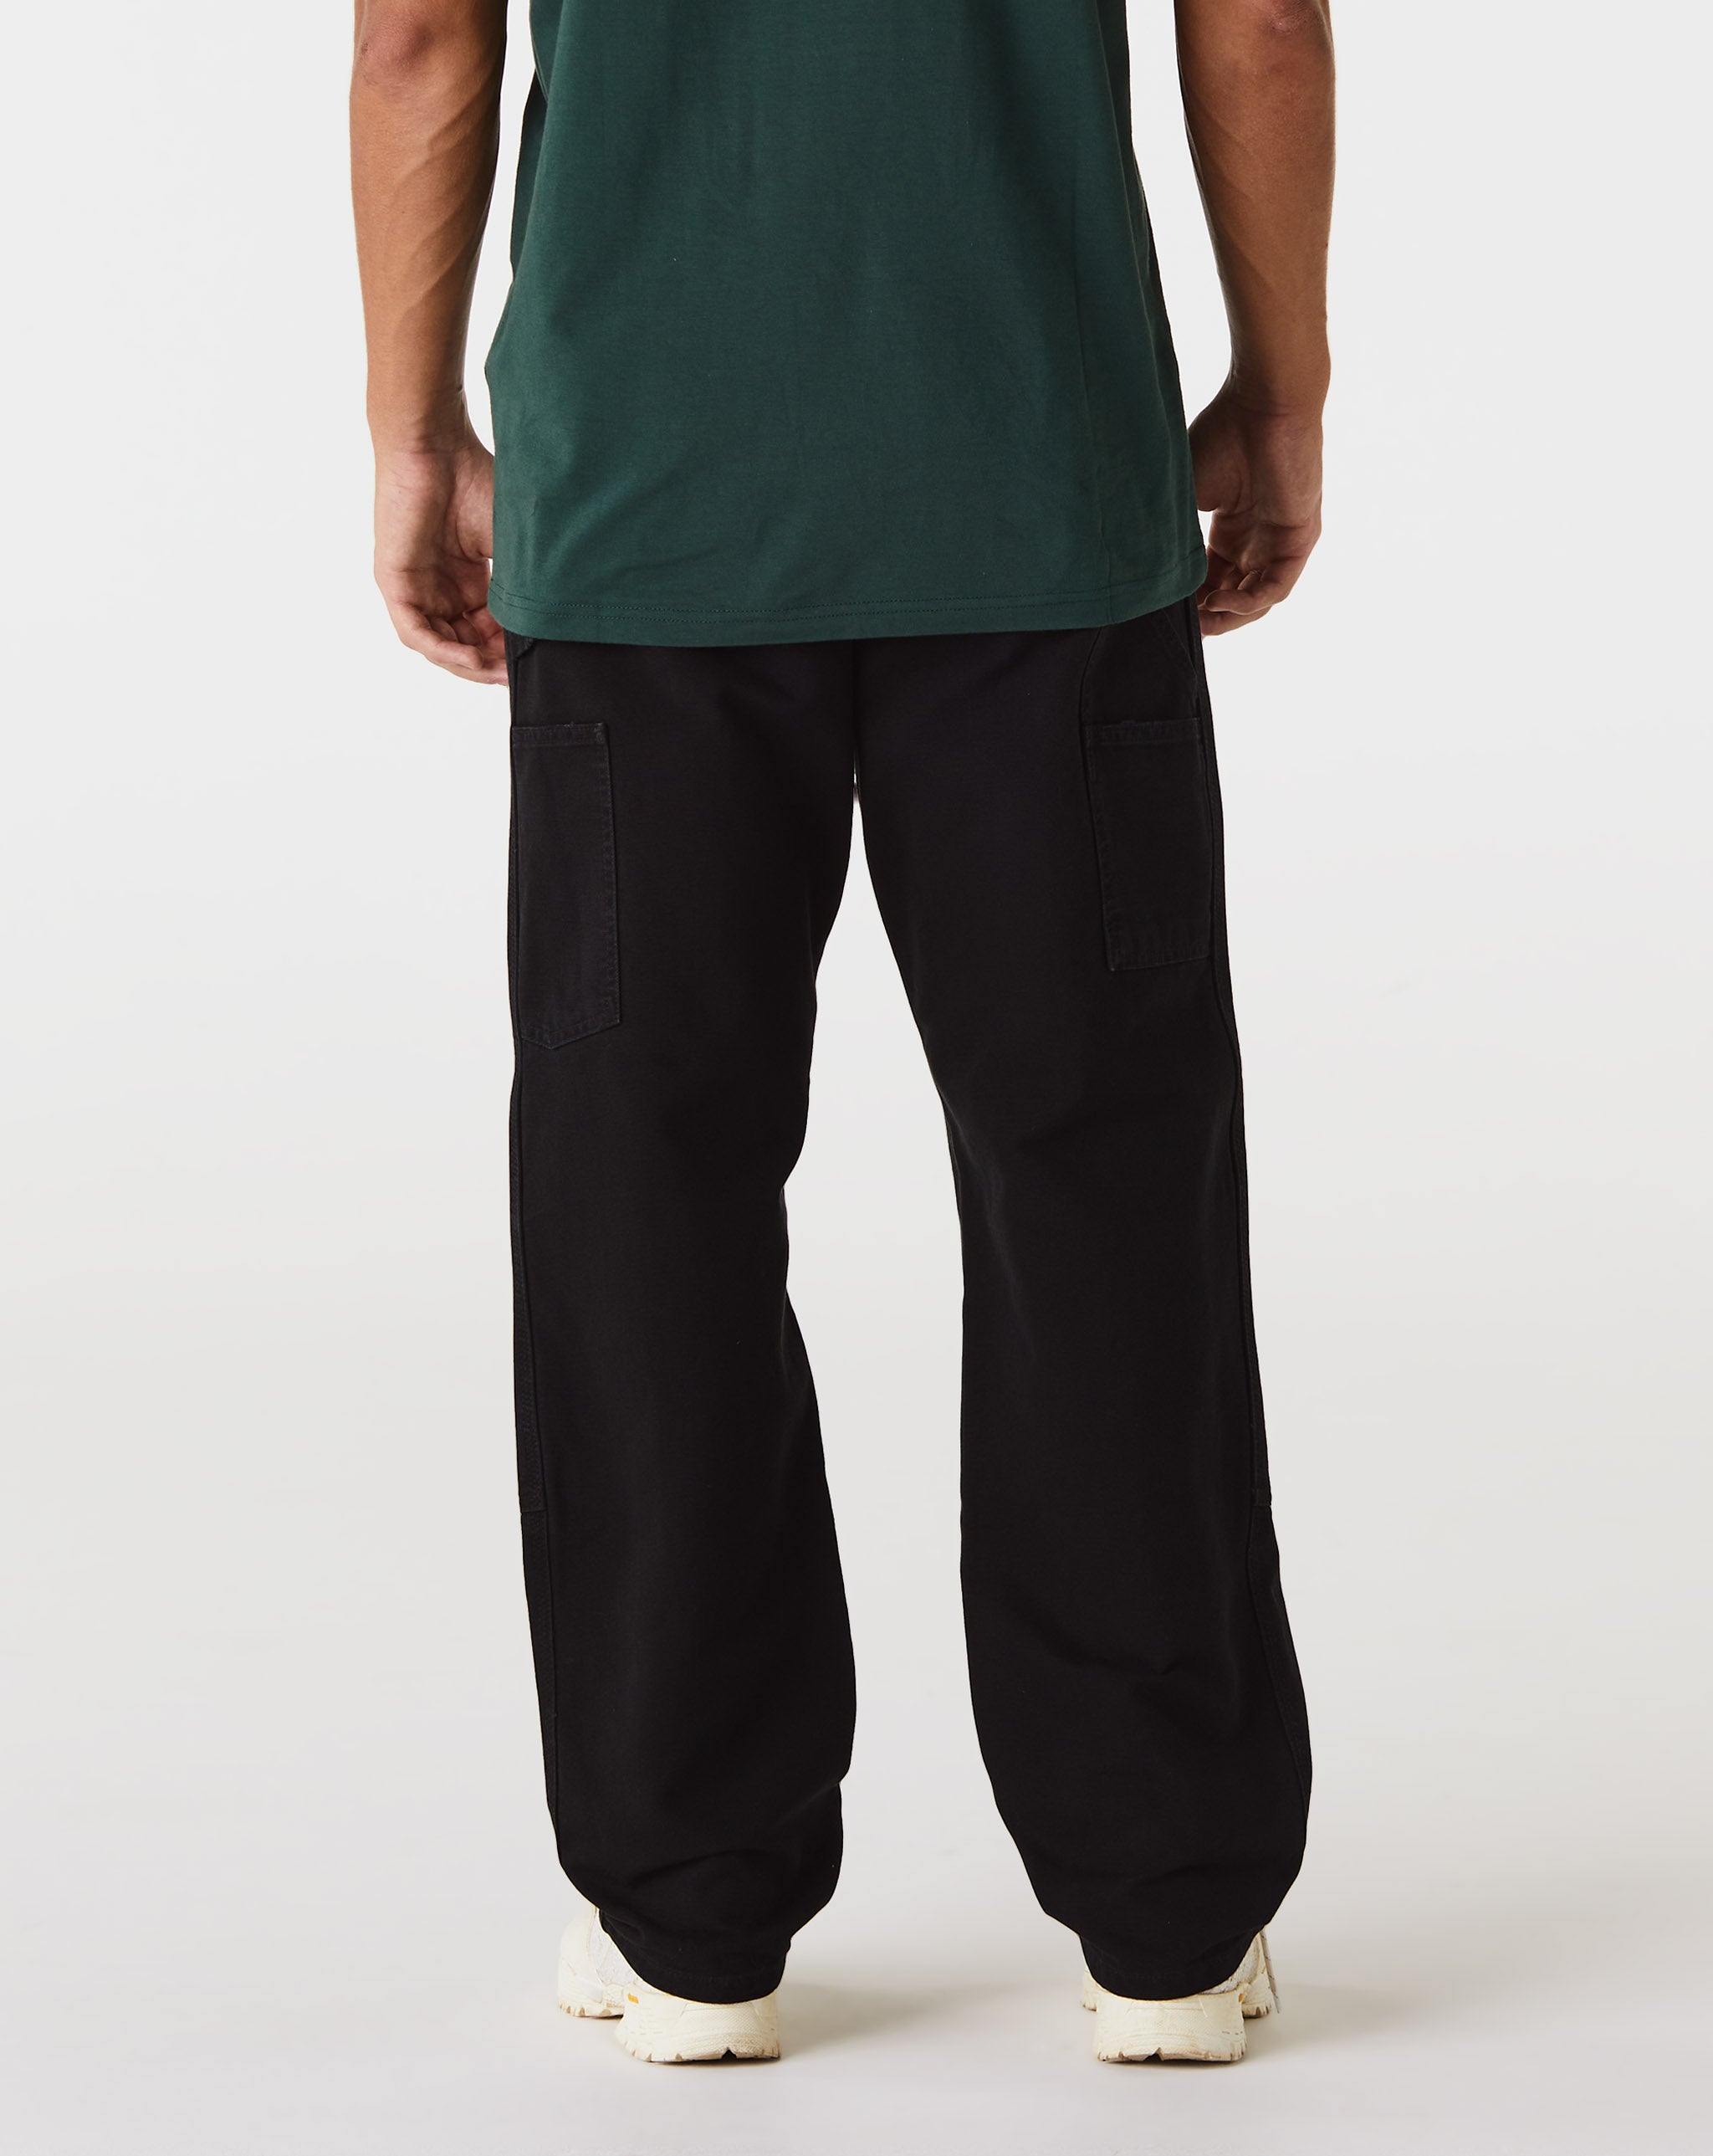 Carhartt WIP Shirts & Polos  - Cheap Urlfreeze Jordan outlet